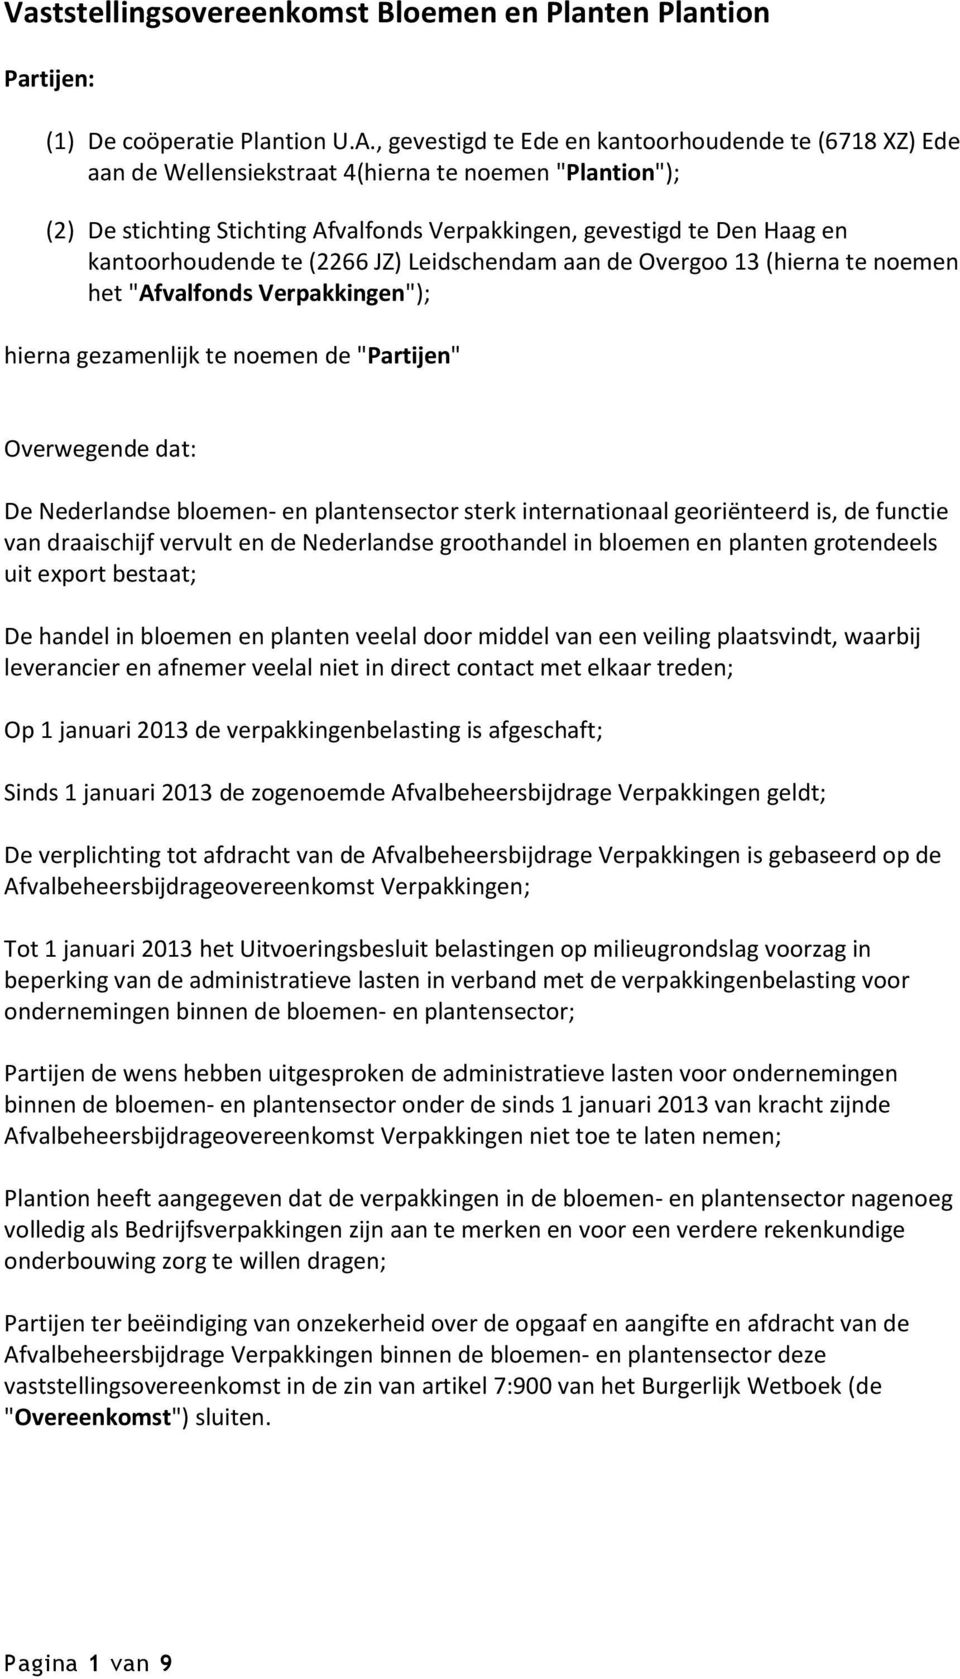 kantoorhoudende te (2266 JZ) Leidschendam aan de Overgoo 13 (hierna te noemen het "Afvalfonds Verpakkingen"); hierna gezamenlijk te noemen de "Partijen" Overwegende dat: De Nederlandse bloemen- en